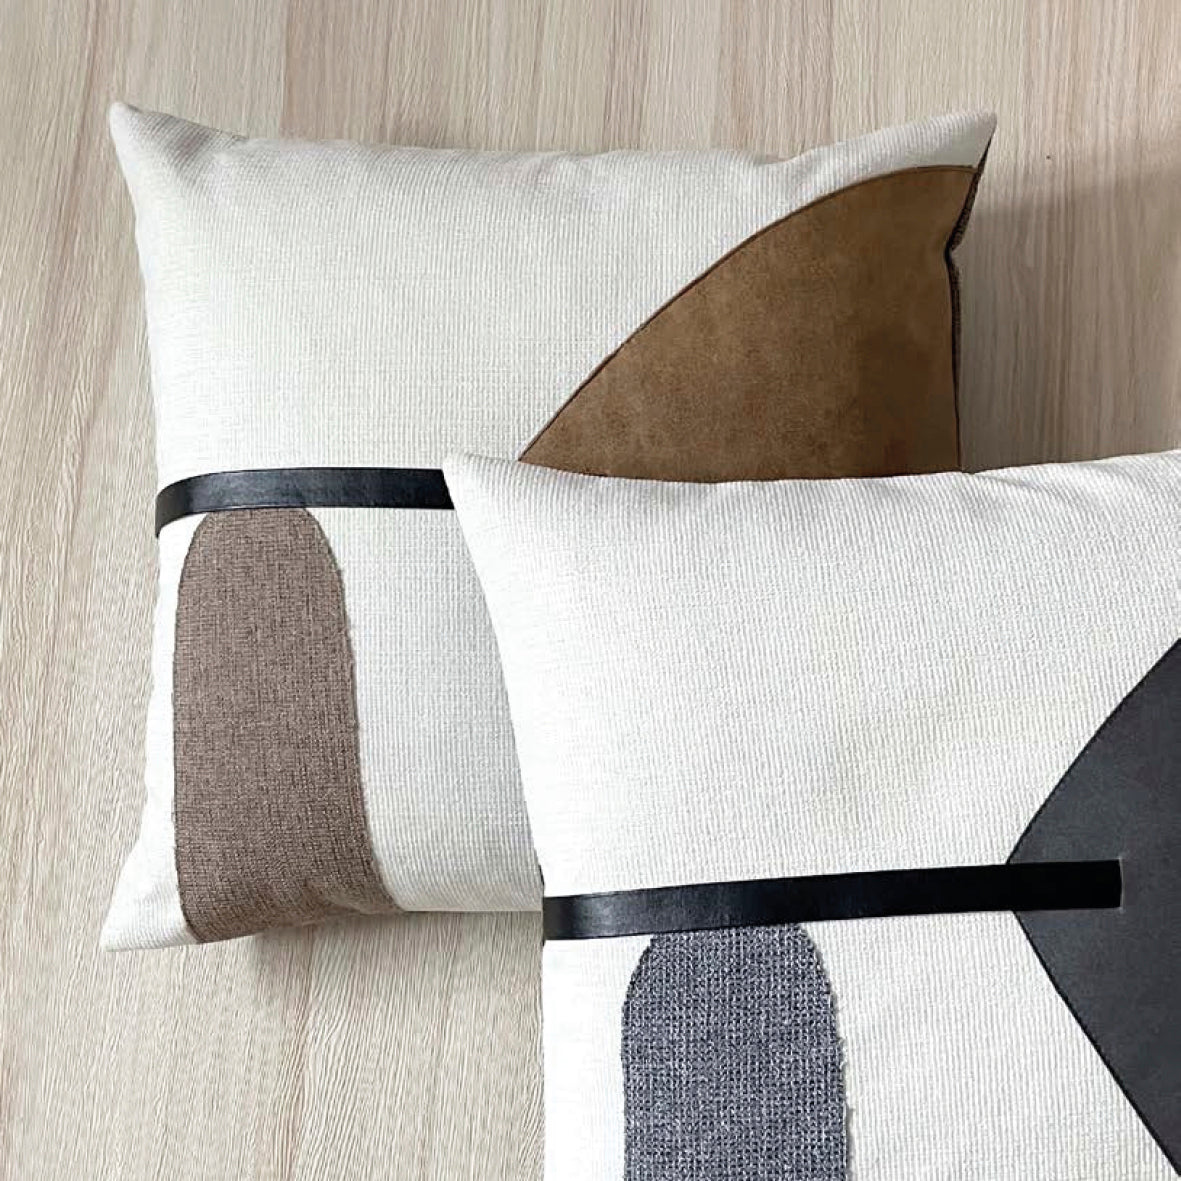 Cushion cover Margaux Brown - 45 x 45 cm